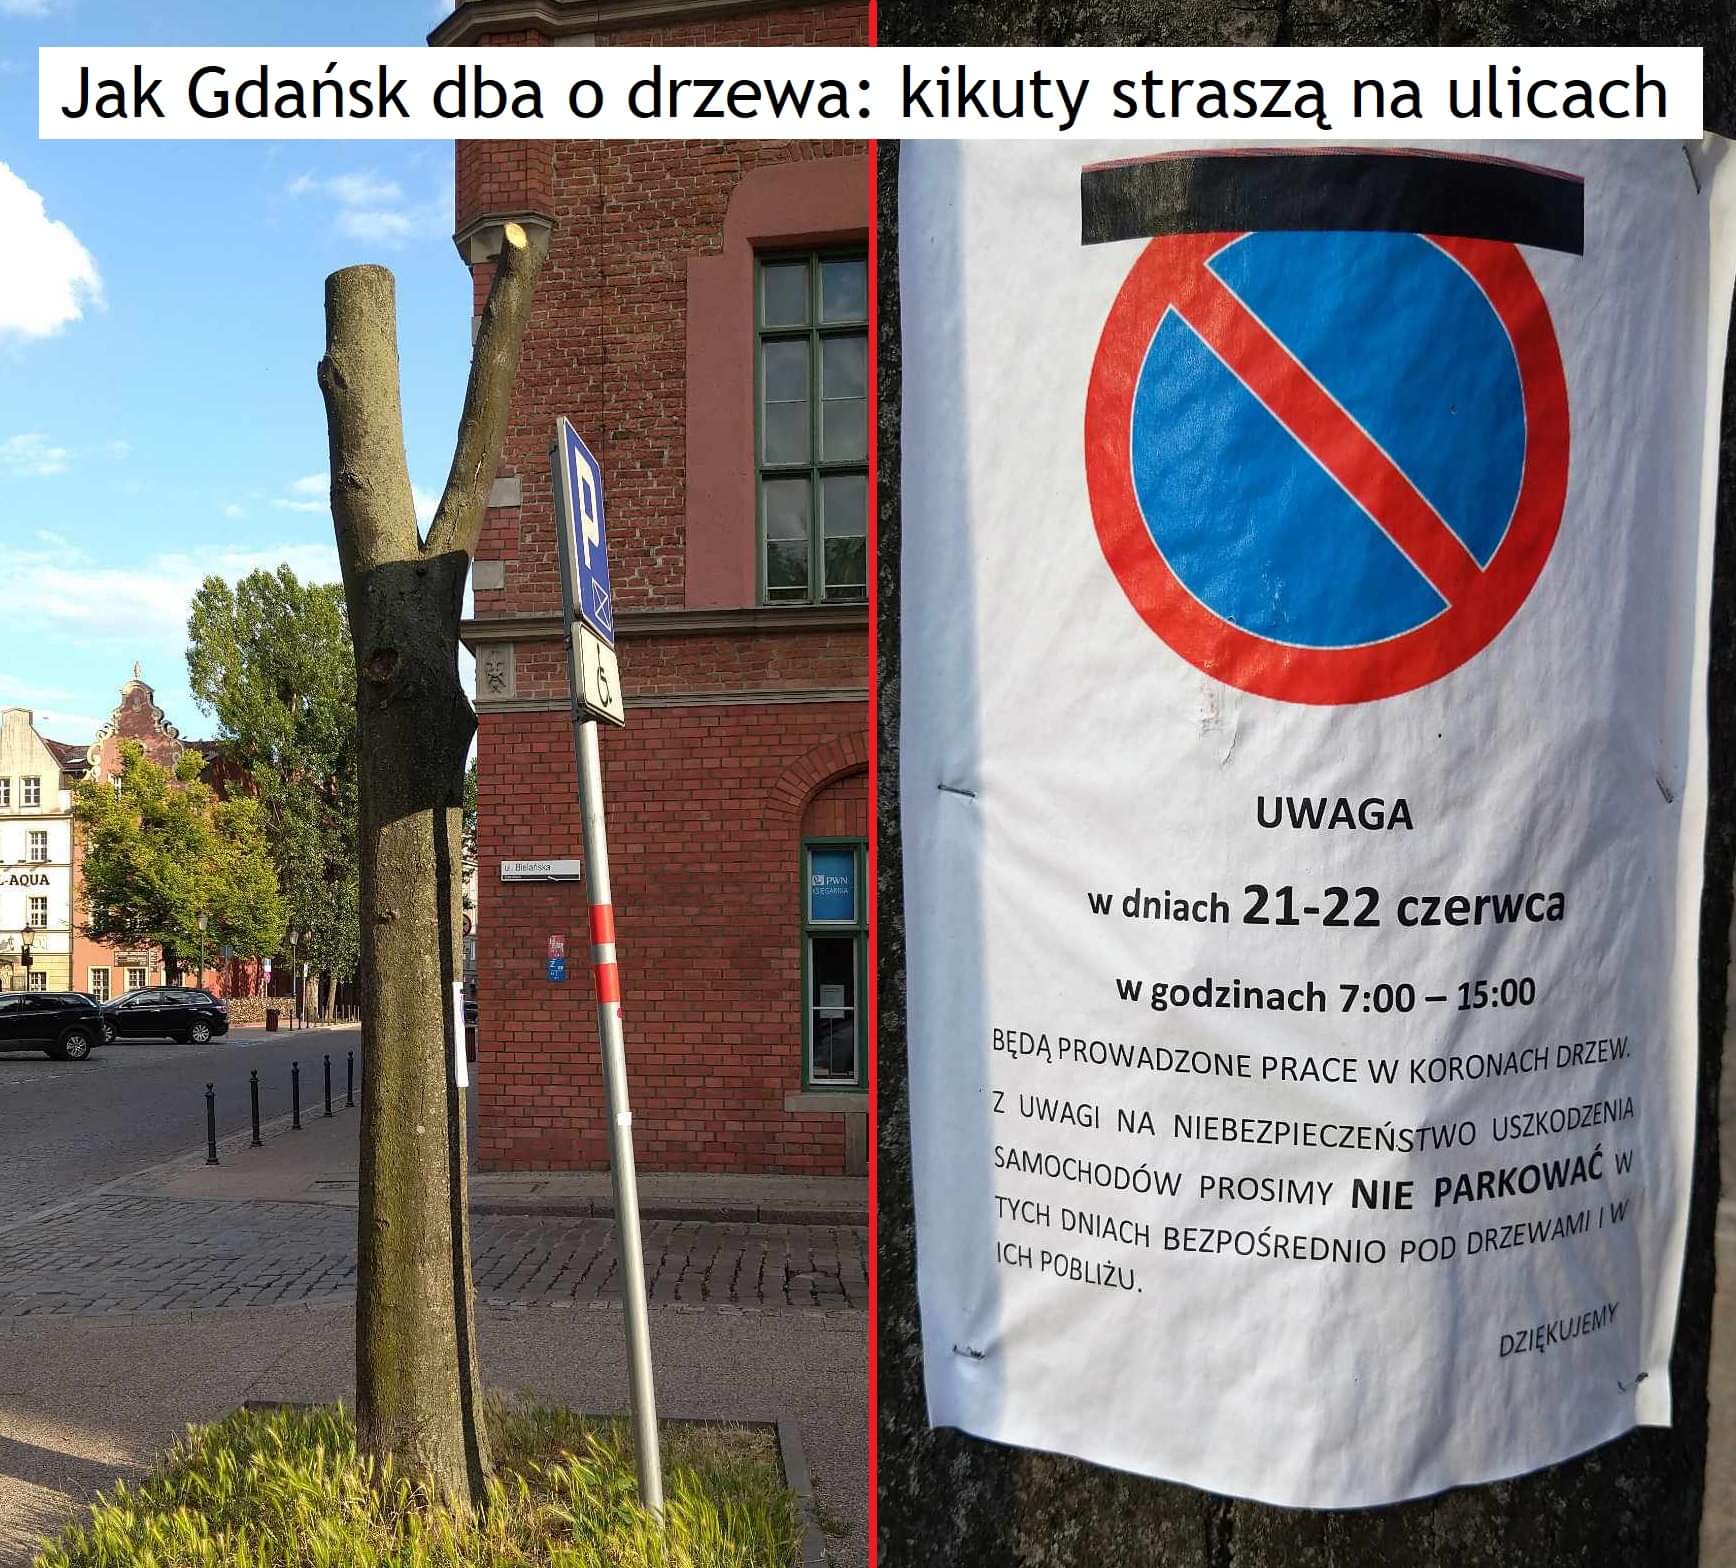 Drzewa Gdańsk